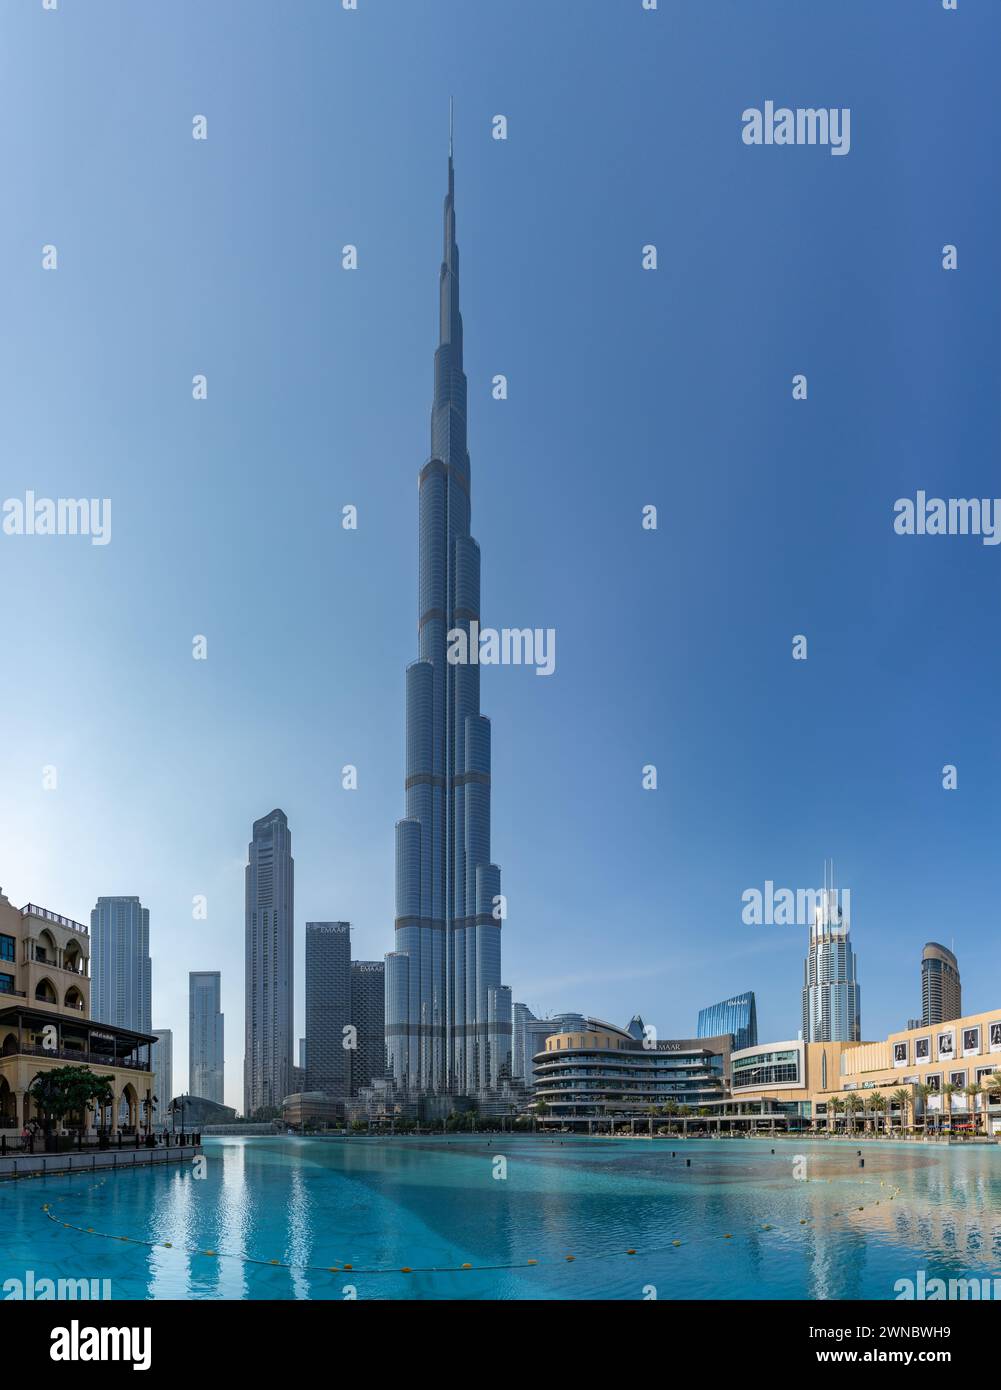 Ein Bild des Burj Khalifa, der die nahe gelegenen Gebäude in der Innenstadt von Dubai und das blaue Wasser des Burj Khalifa Lake überragt. Stockfoto